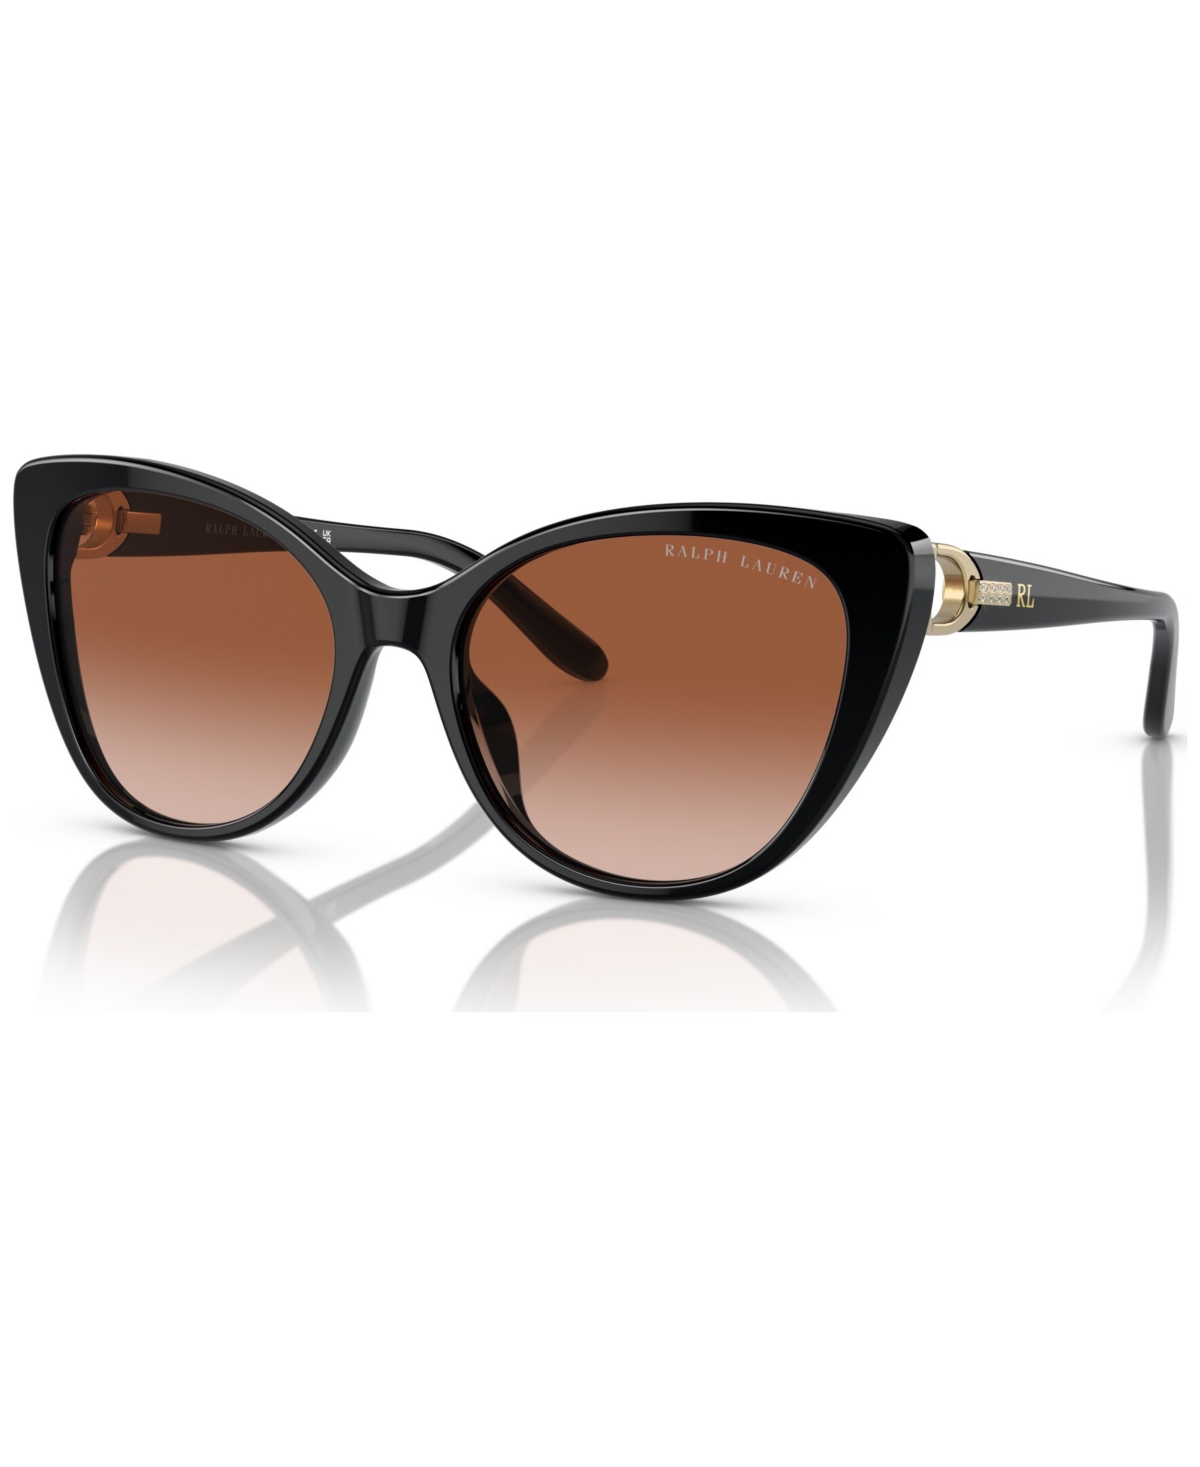 Ralph Lauren Women's Sunglasses, Rl8215bu In Gradient Brown